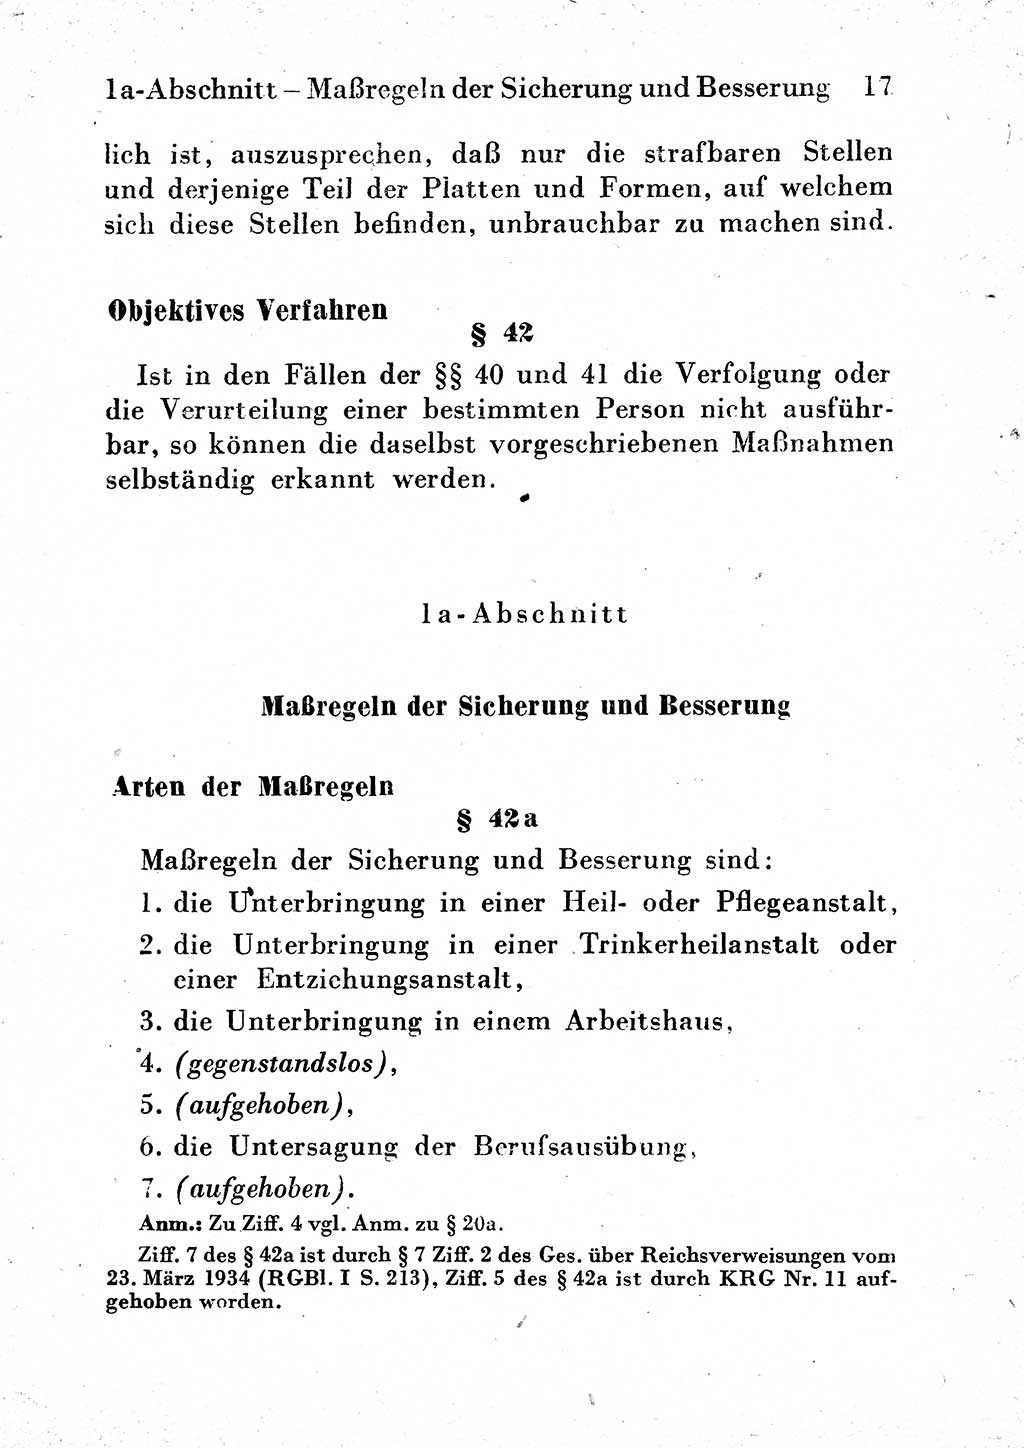 Strafgesetzbuch (StGB) und andere Strafgesetze [Deutsche Demokratische Republik (DDR)] 1954, Seite 17 (StGB Strafges. DDR 1954, S. 17)